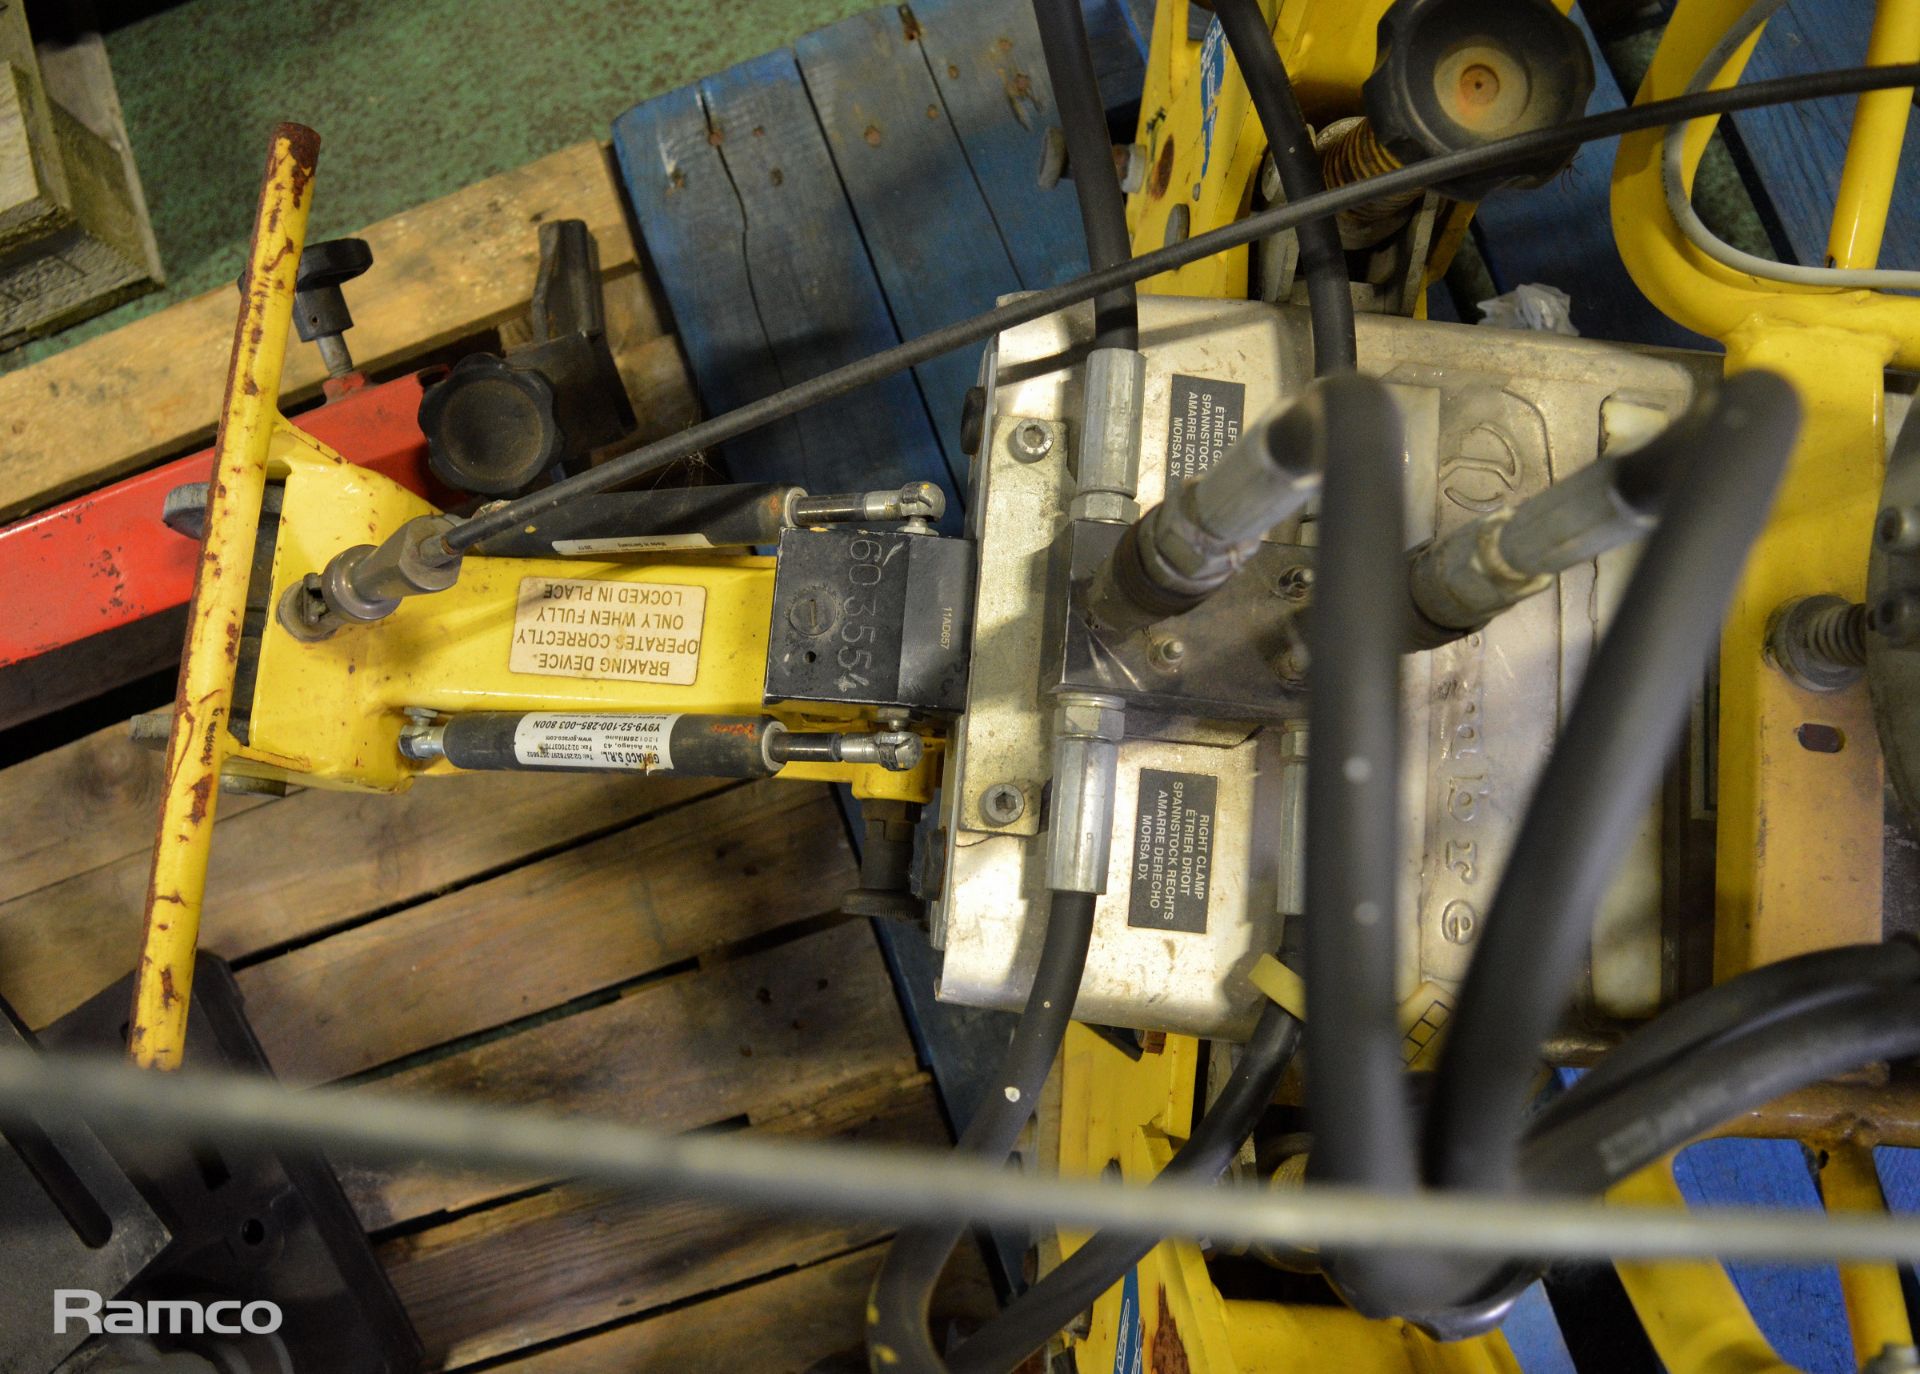 Honda Cembre Hydraulic Pandrol Railroad track Clip Remover/Installer unit - Image 4 of 9